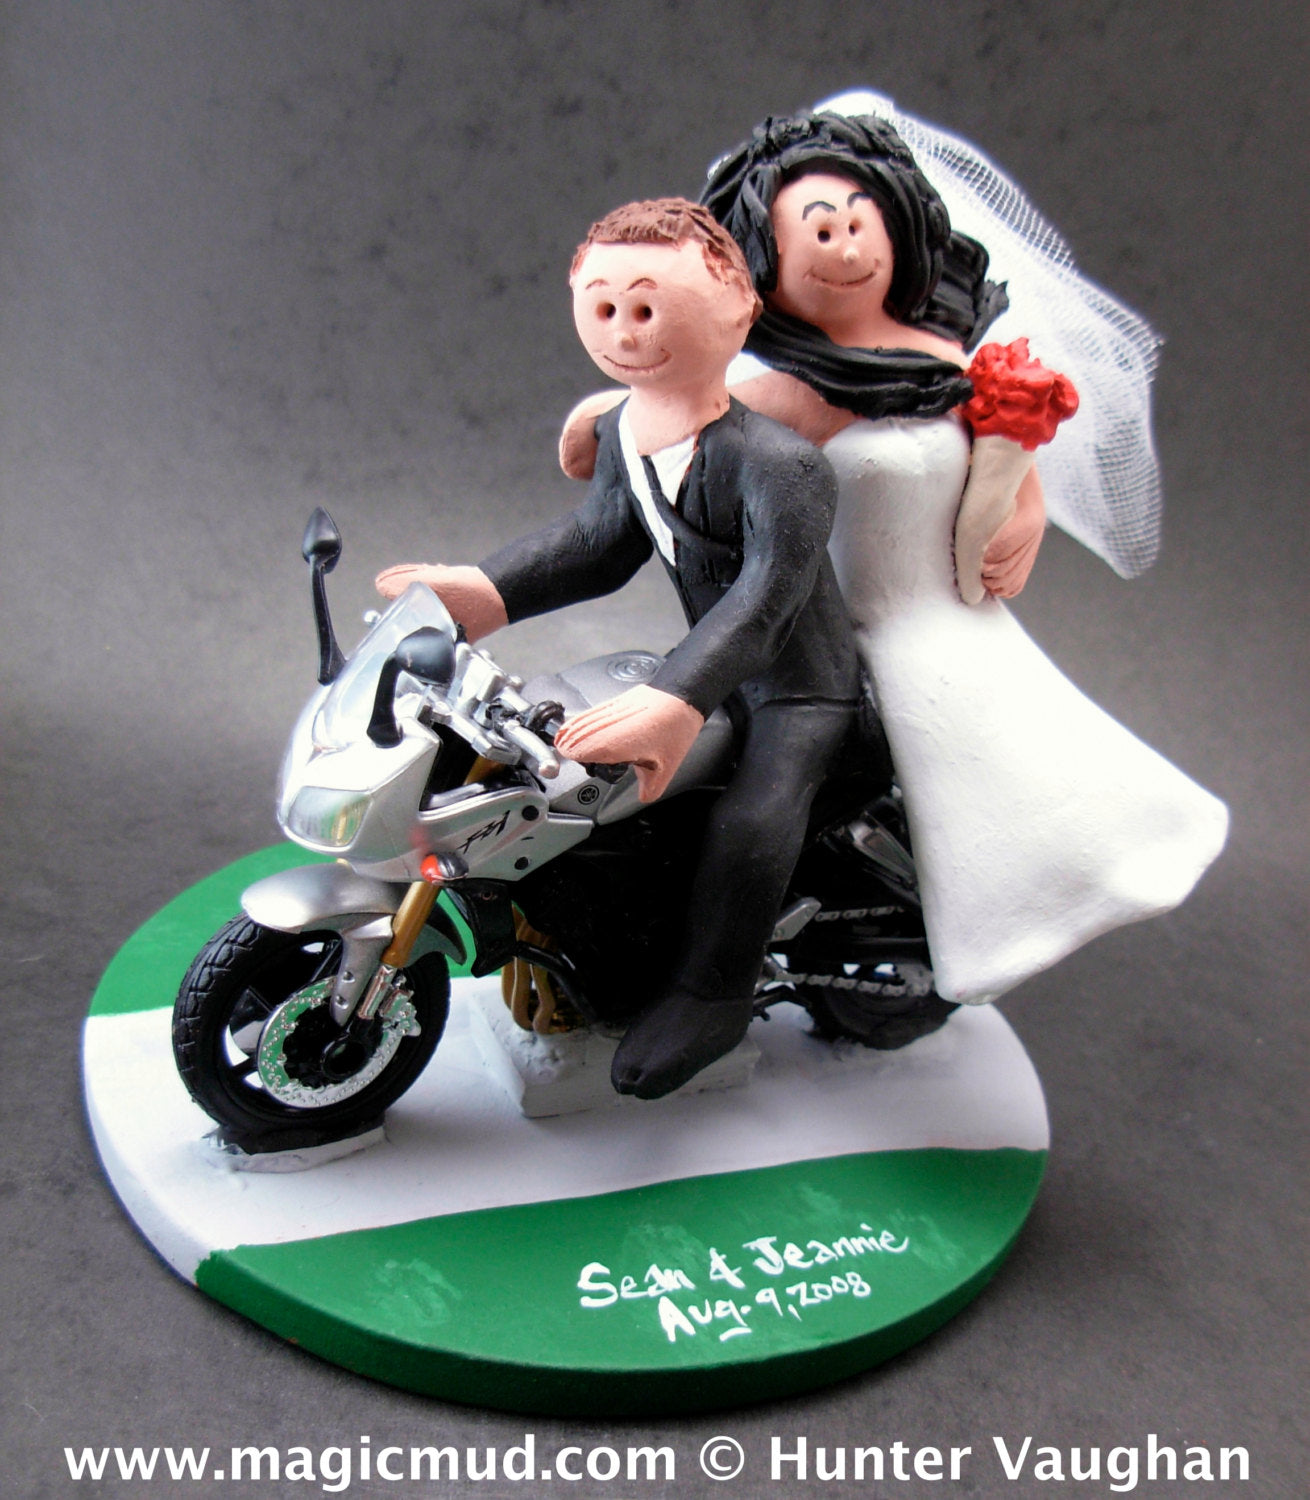 Yamaha Sportbike Motorcycle Wedding Cake Topper,  Motorcycle Wedding Cake Topper, Motorcycle Riders Wedding Cake Topper, Bikers Wed Figurine - iWeddingCakeToppers